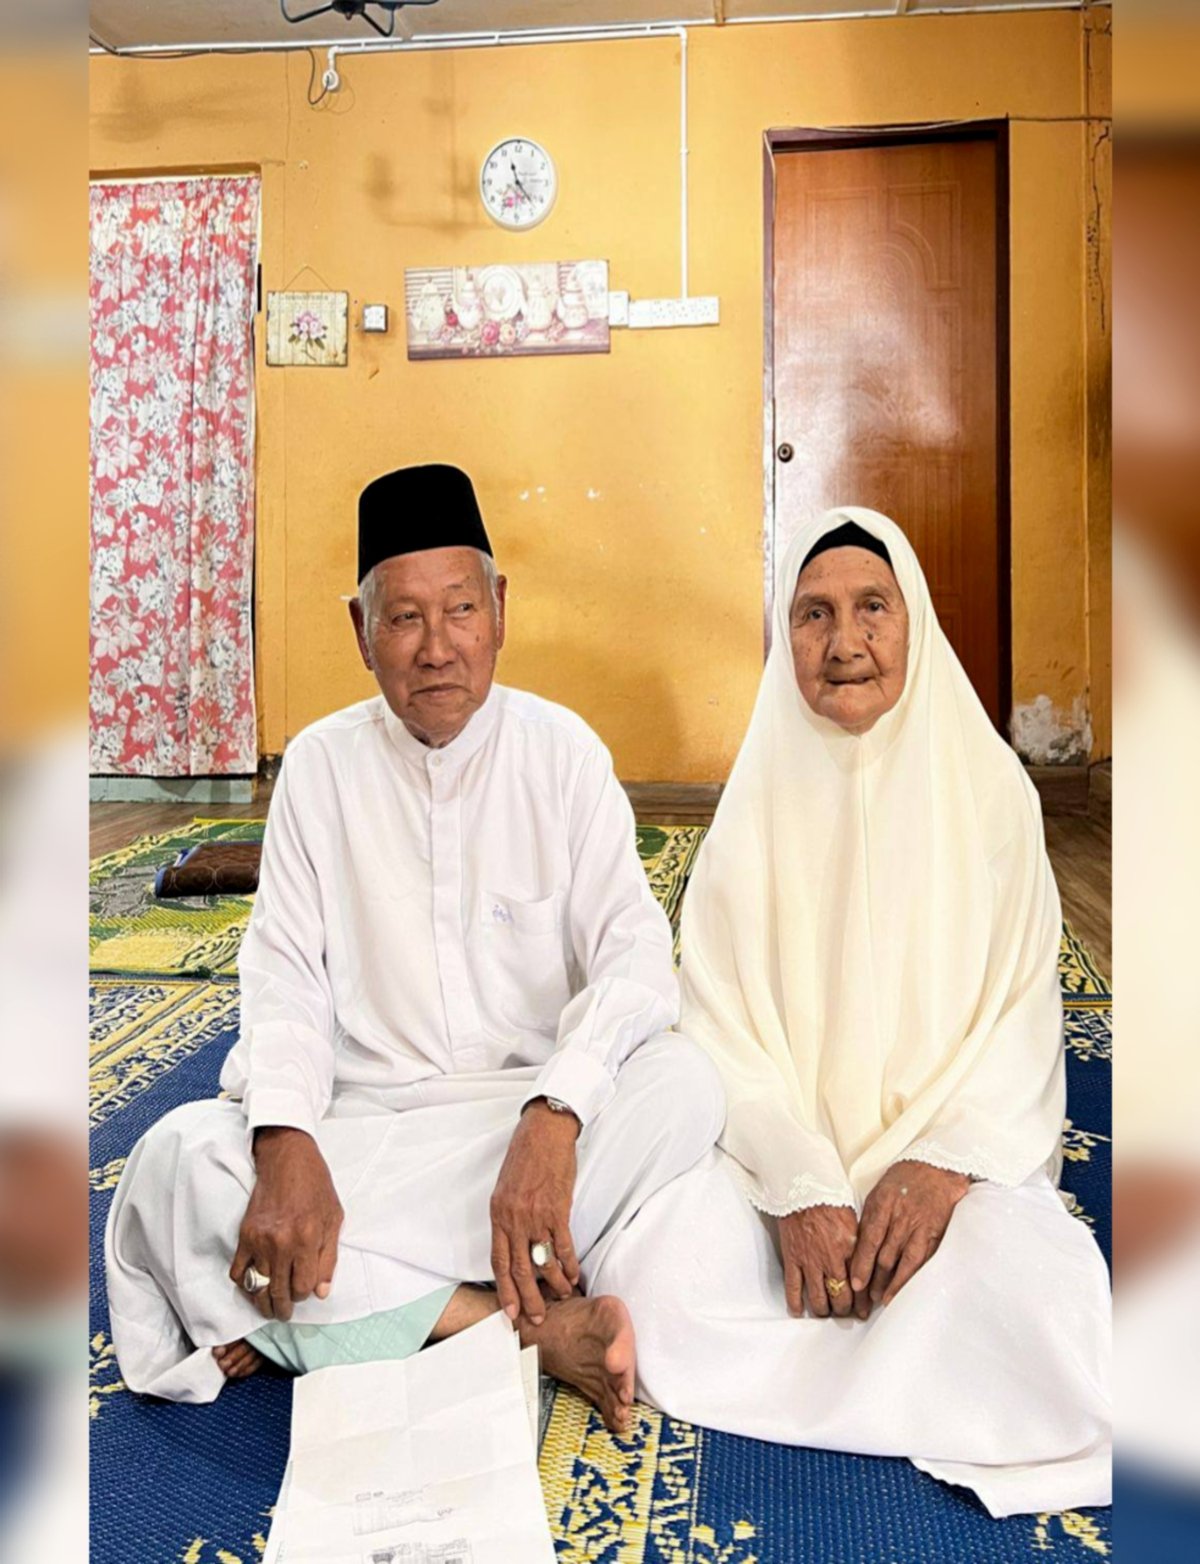 MAHMOOD Mamat dan Fatimah Mohd Nor selamat diijabkabulkan pada 16 Oktober lalu. Foto ihsan pembaca